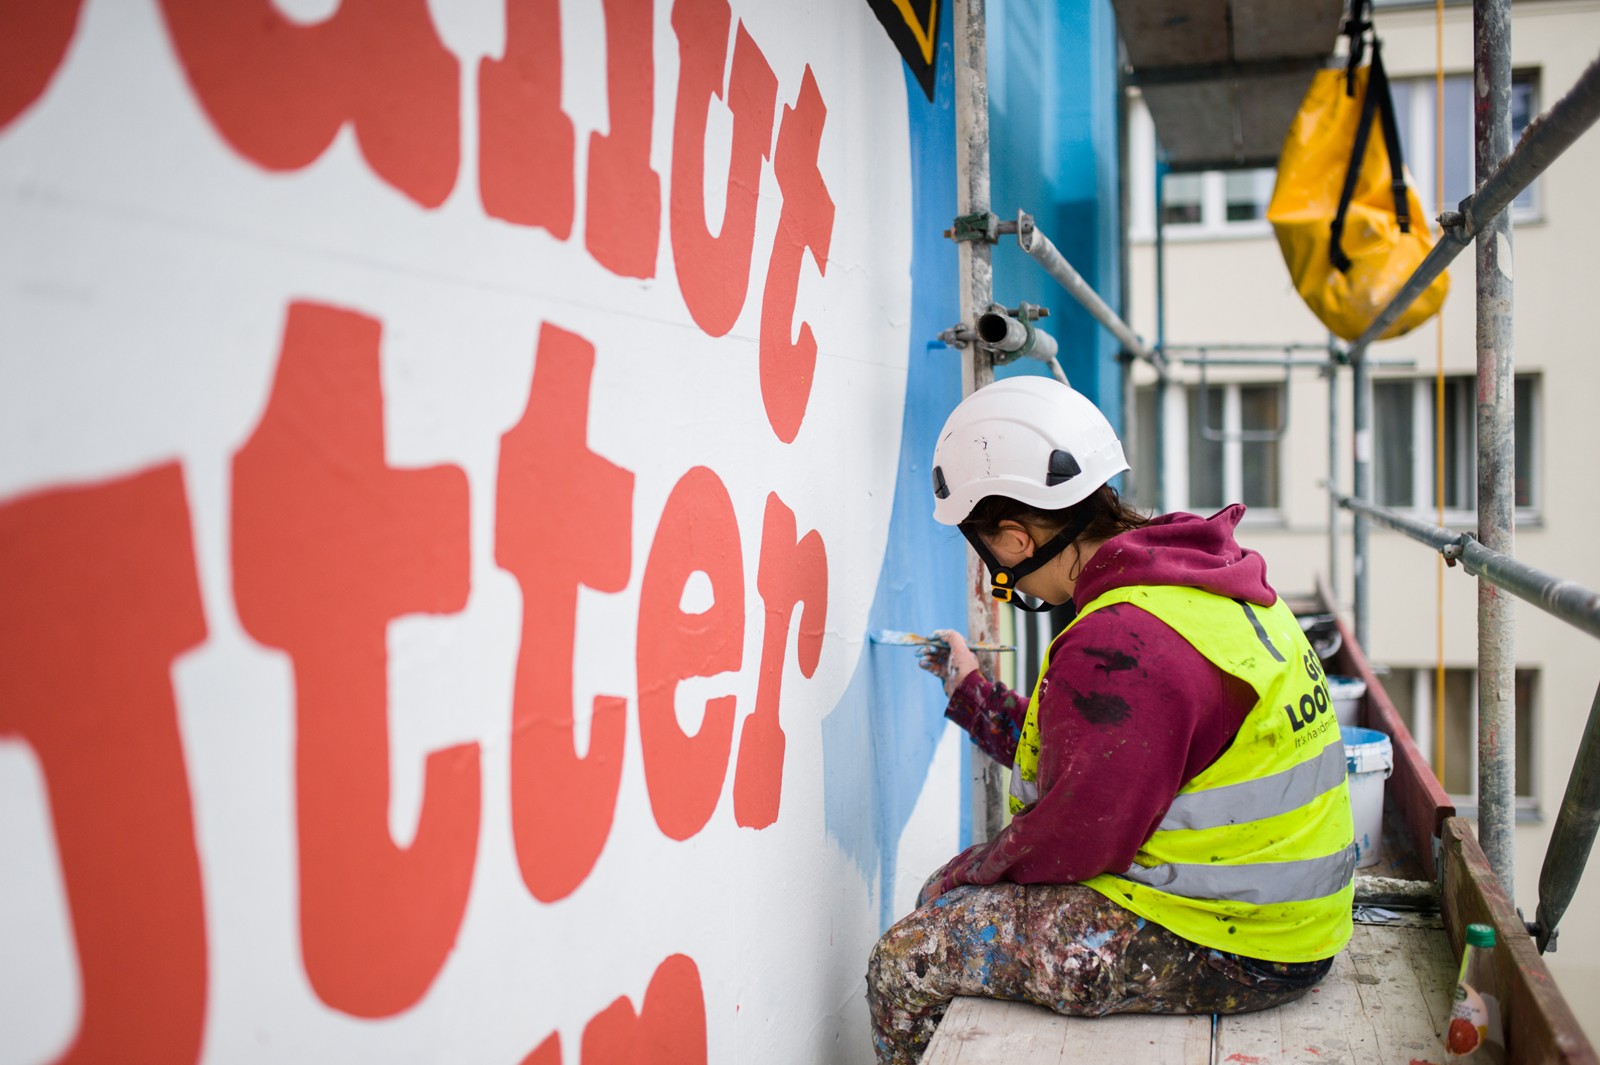 Artyści malujący mural przy Metrze Politechnika w Warszawie na zlecenie Unilever | Premiera Ben&Jerry - kilka murali w Polsce | Portfolio